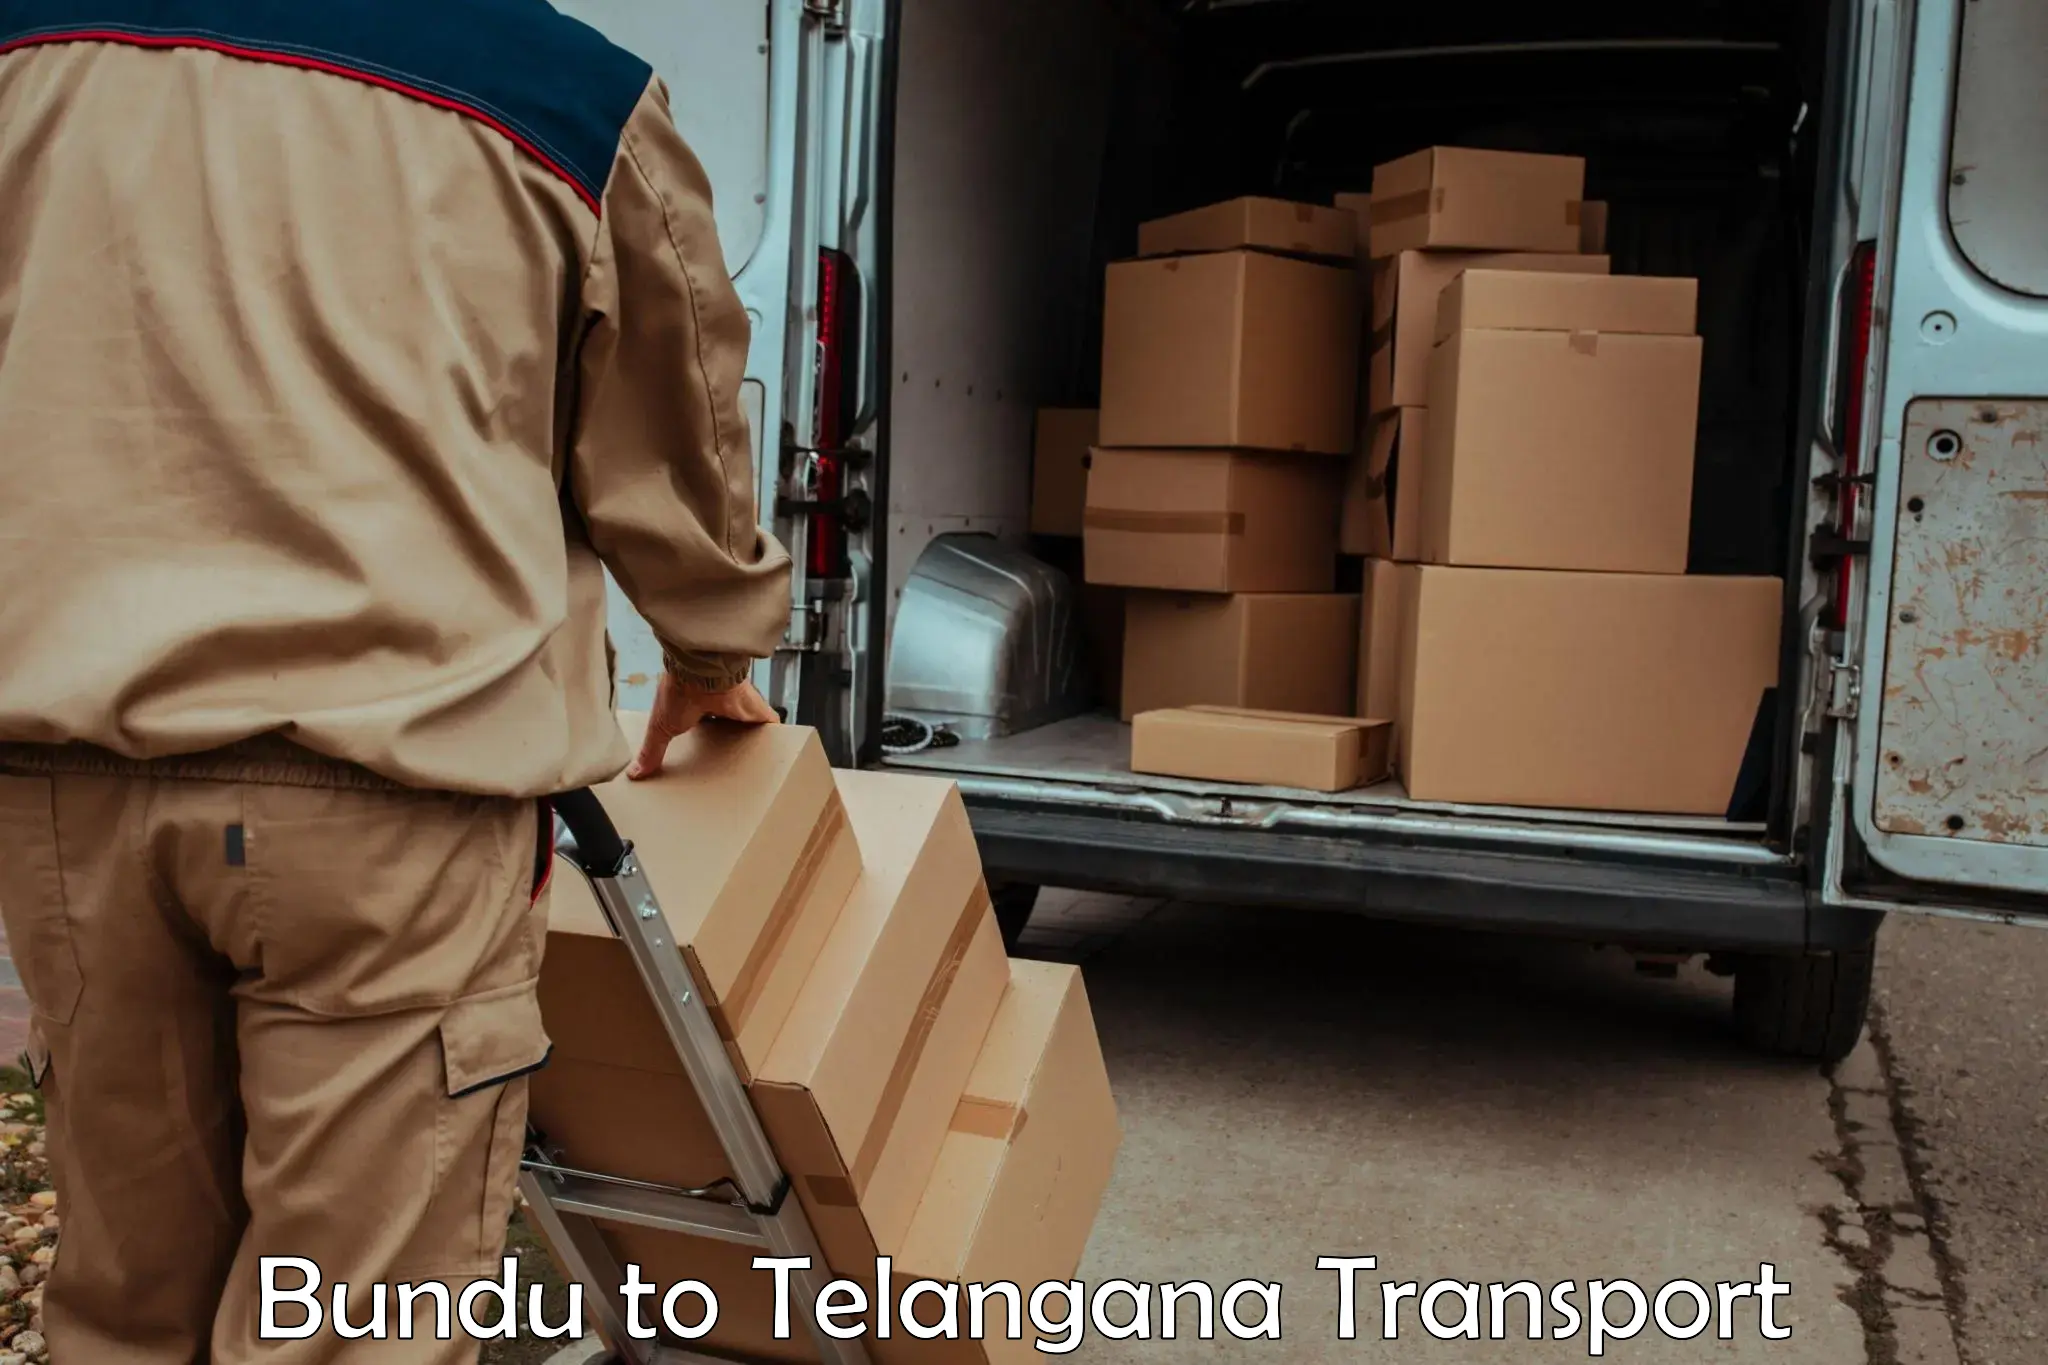 Furniture transport service Bundu to Pregnapur